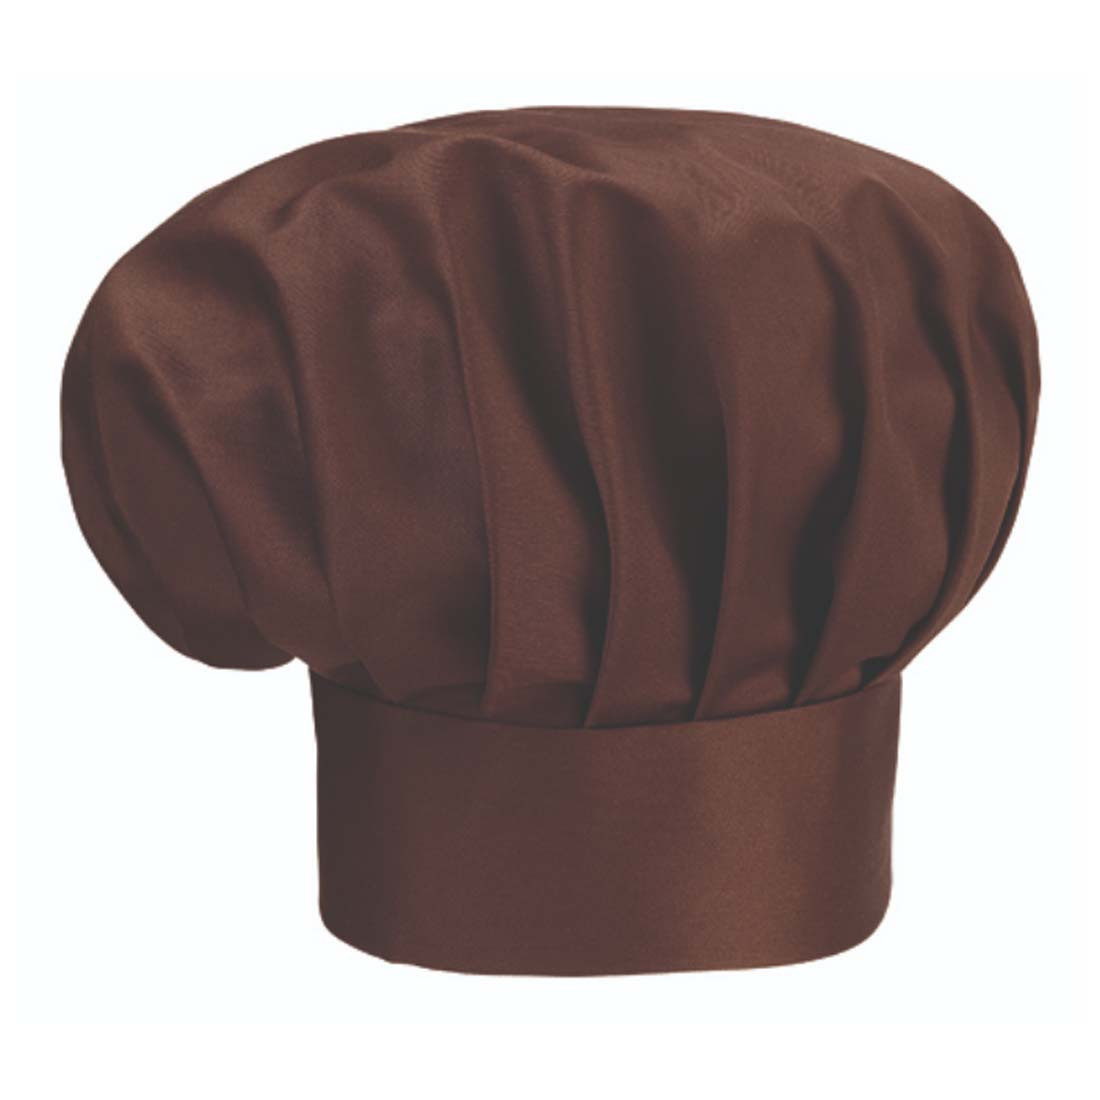 Chef's cap - Safetywear